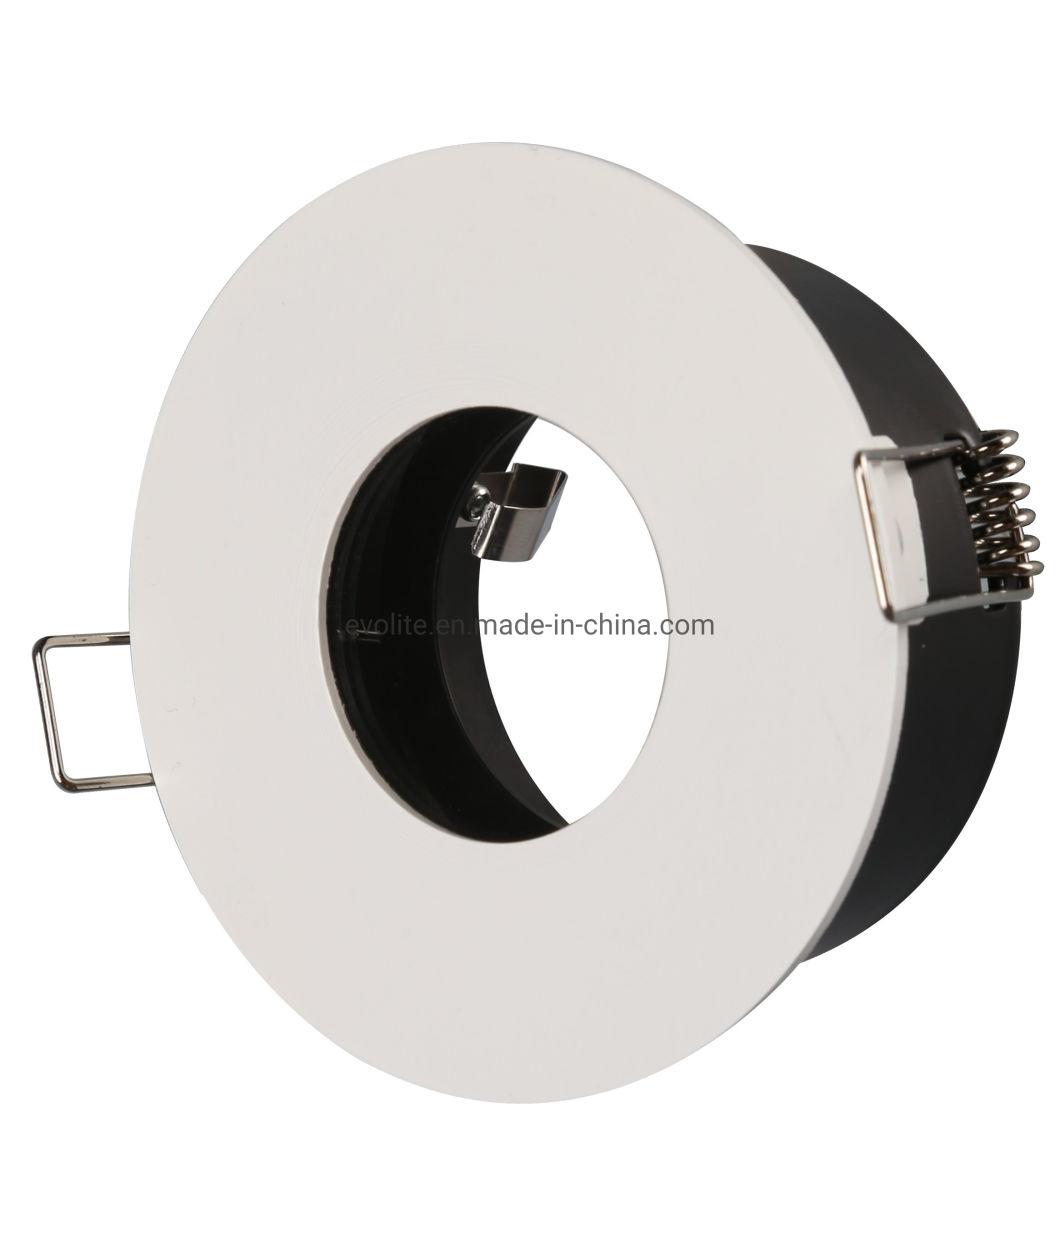 European Style MR16/G5.3 Aluminum GU10 LED Fitting Ceiling Spot Light Frame